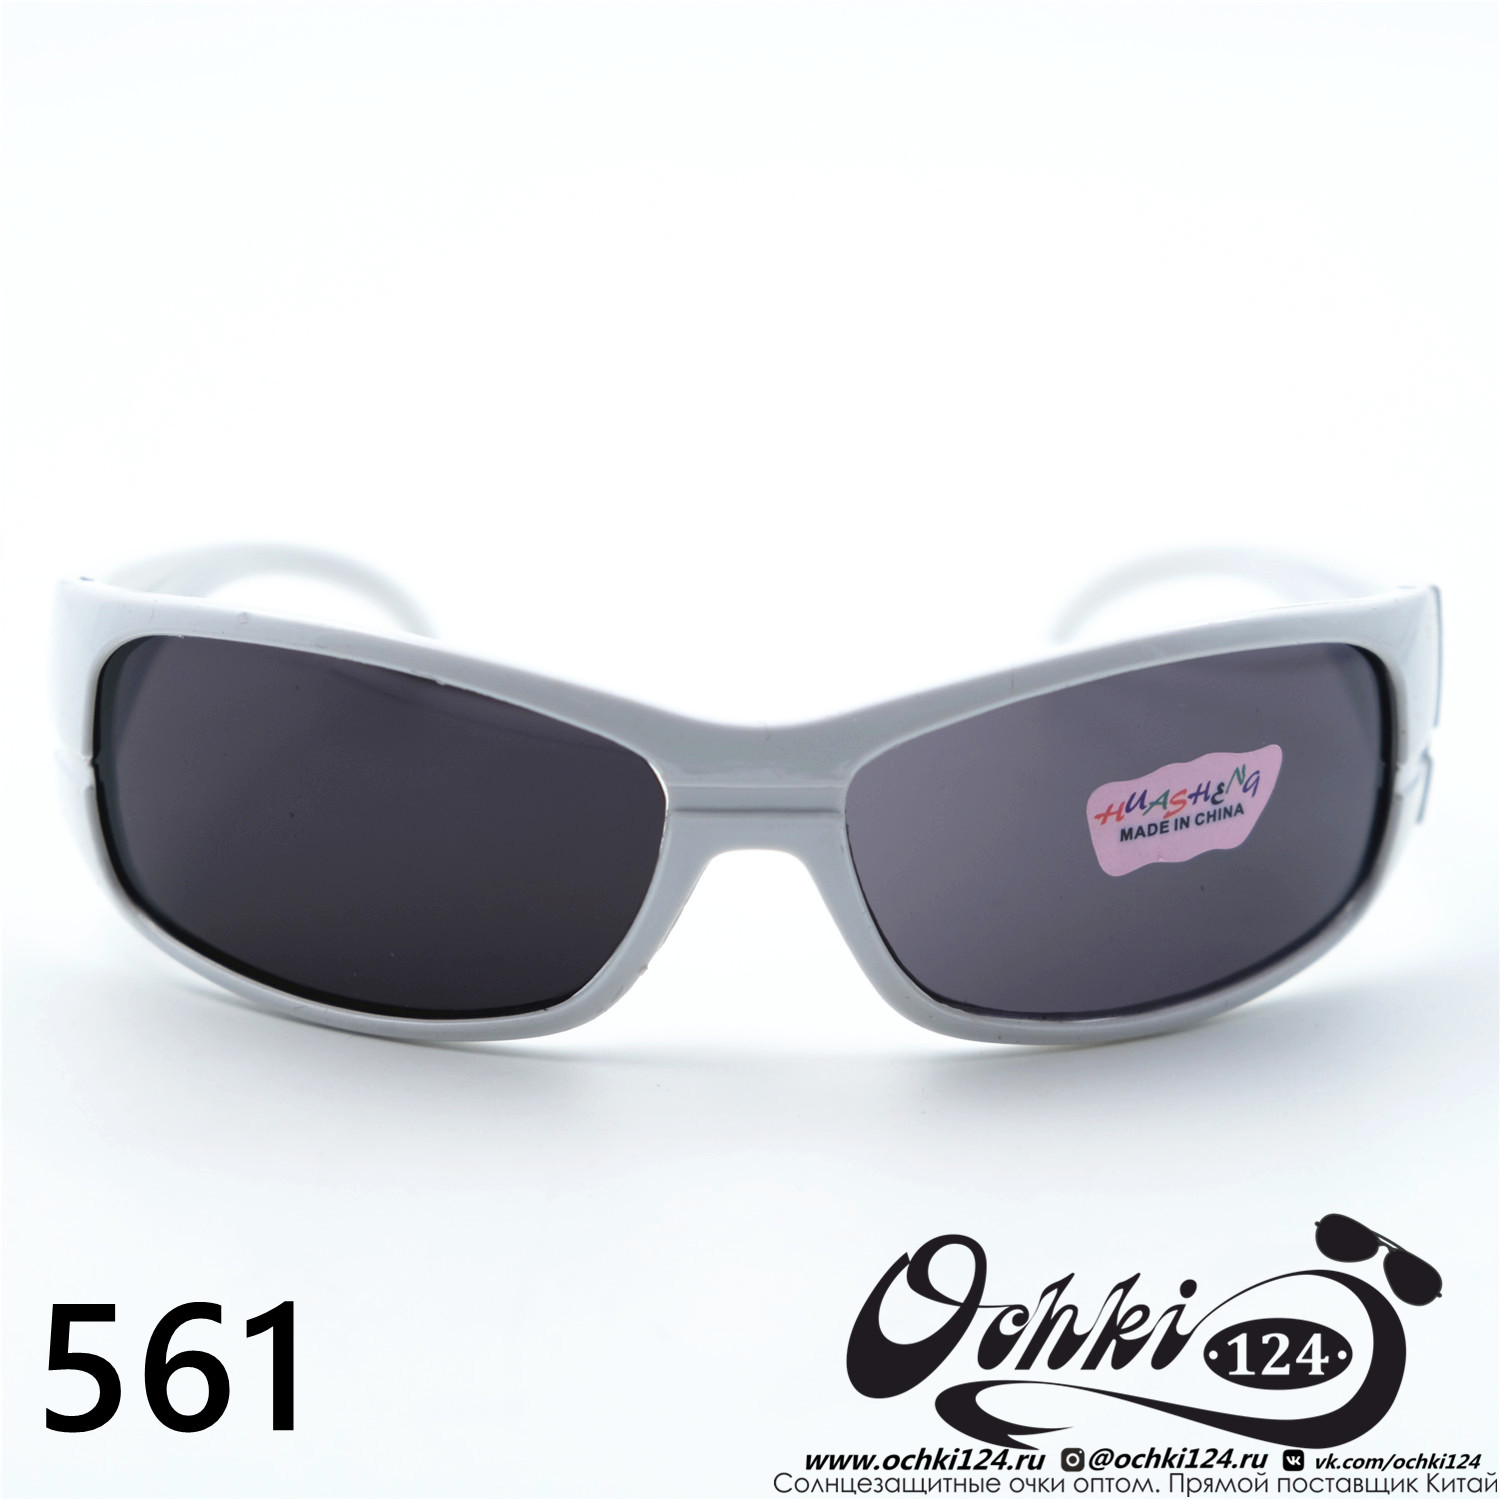  Солнцезащитные очки картинка 2023 Детские Узкие и длинные  561-C6 